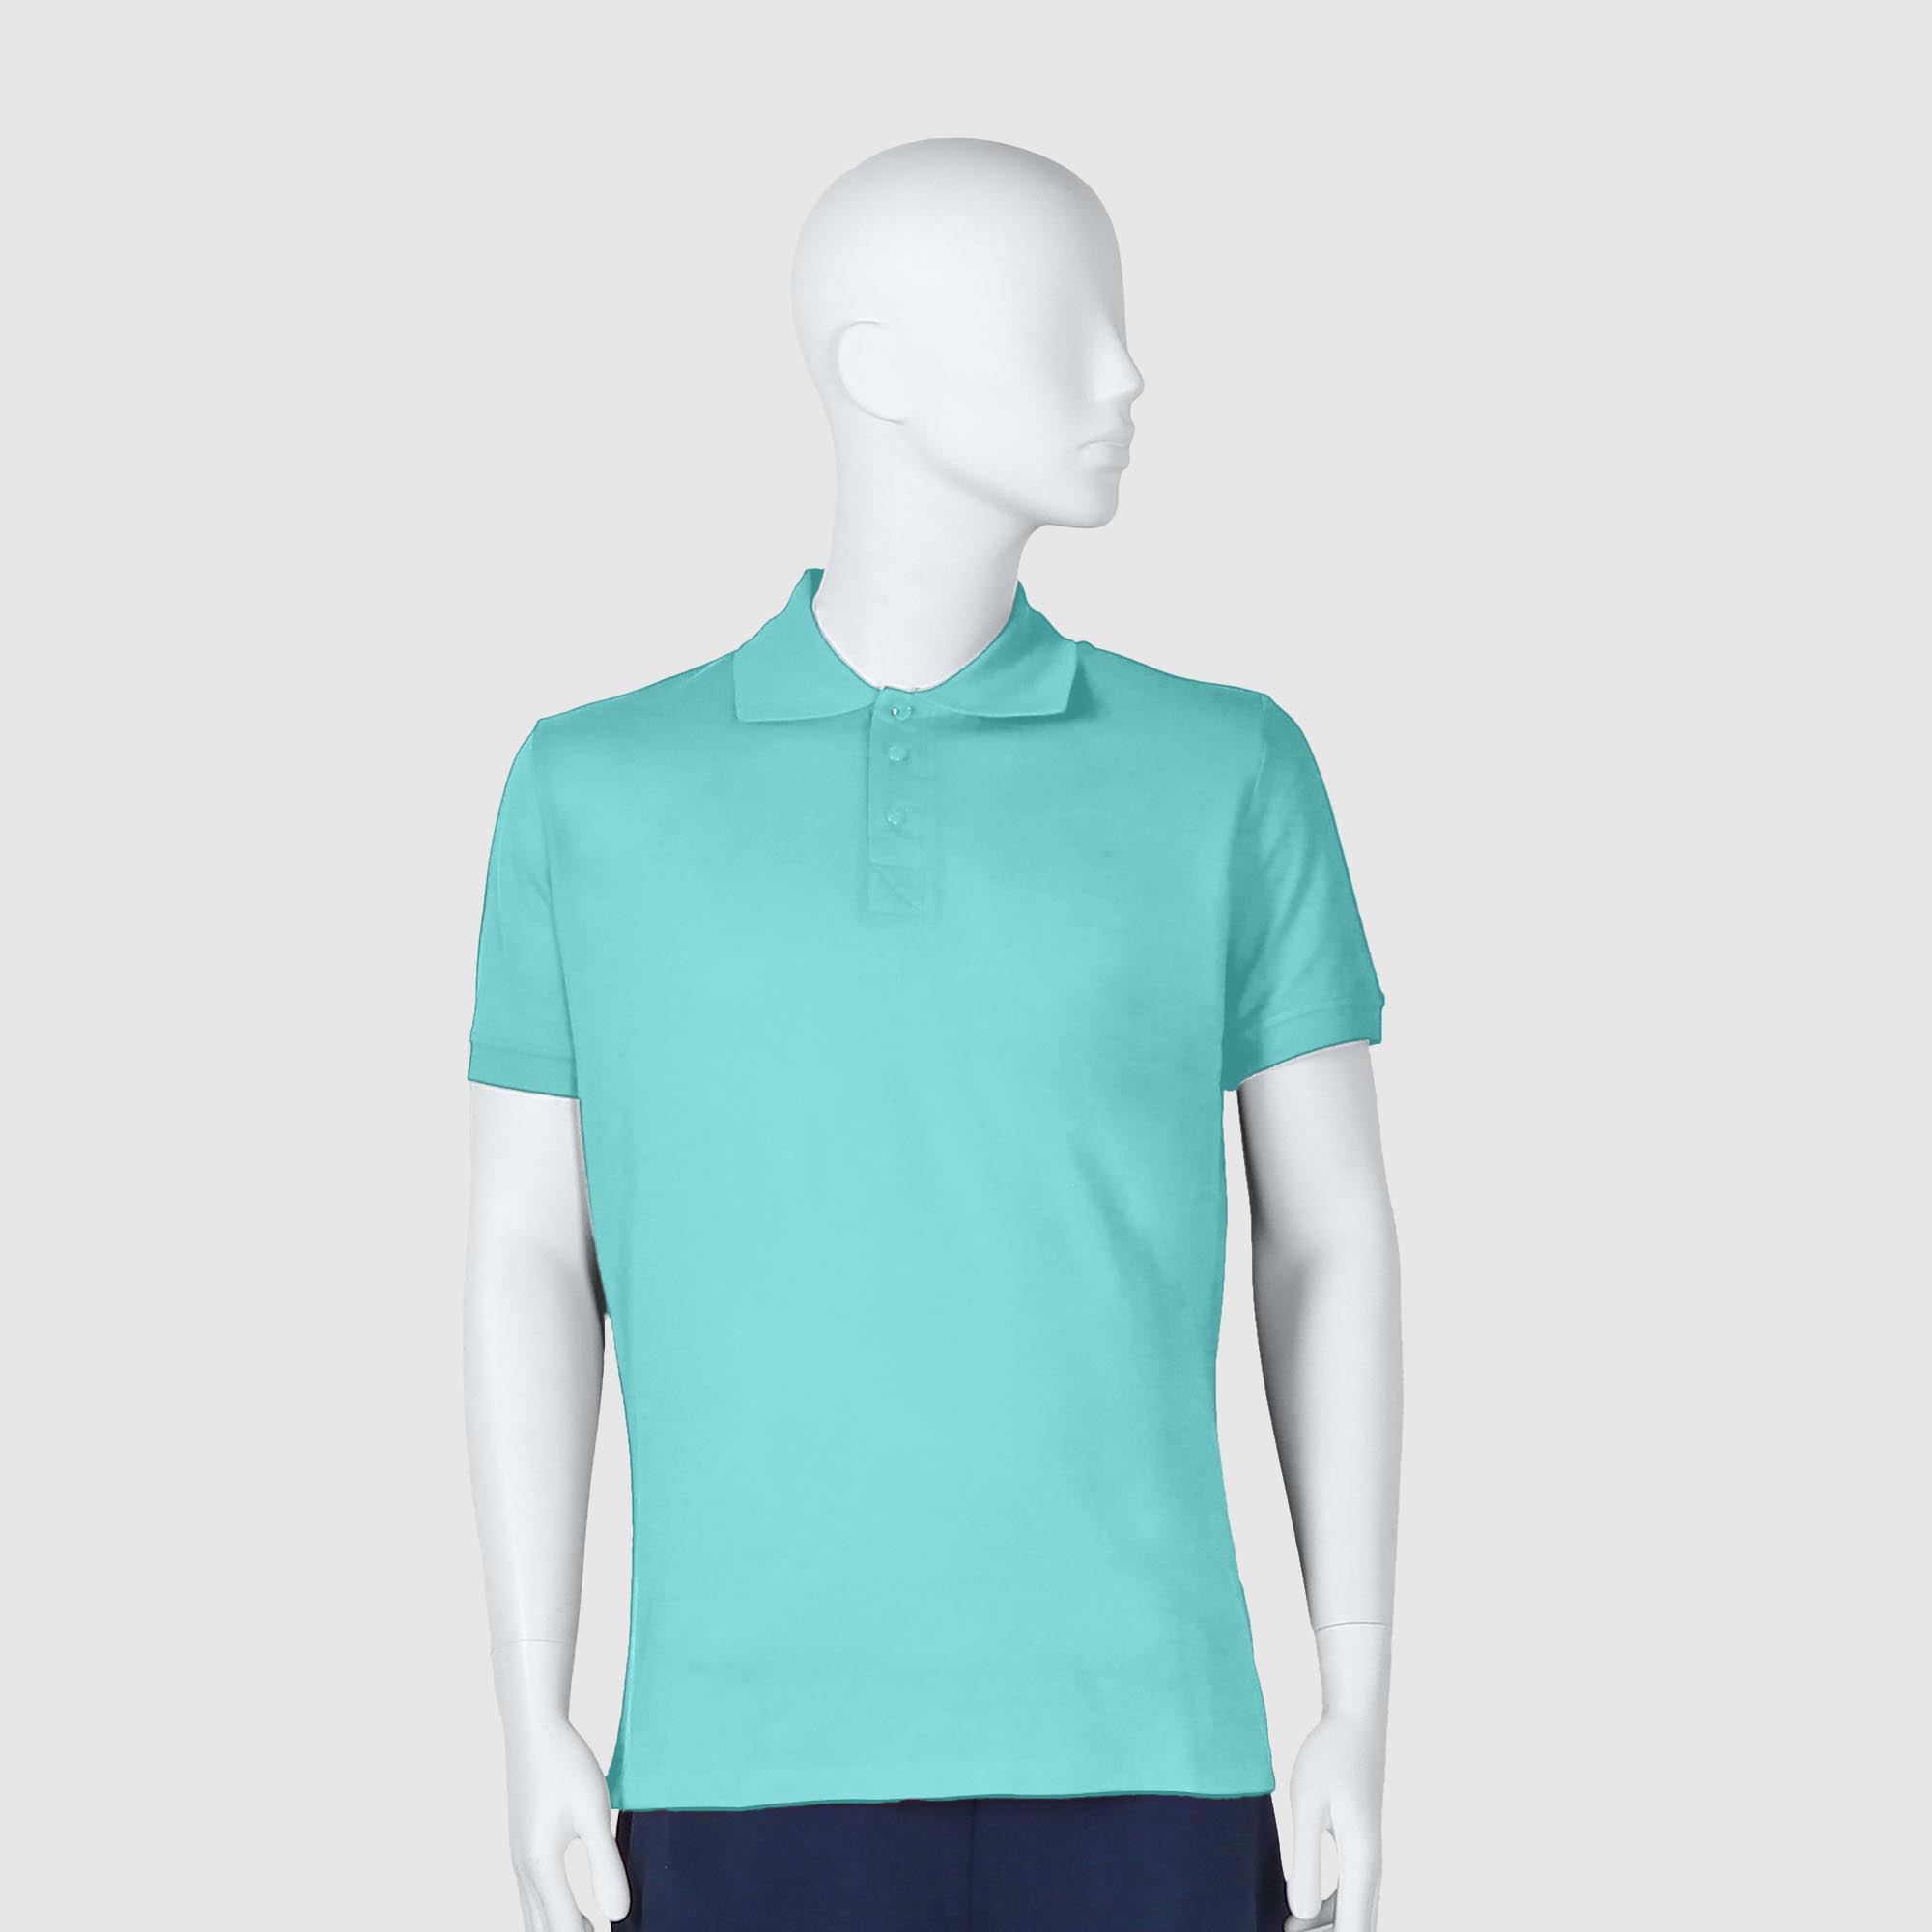 Мужская футболка-поло Diva Teks лазурная (DTD-12), цвет лазурный, размер 48-50